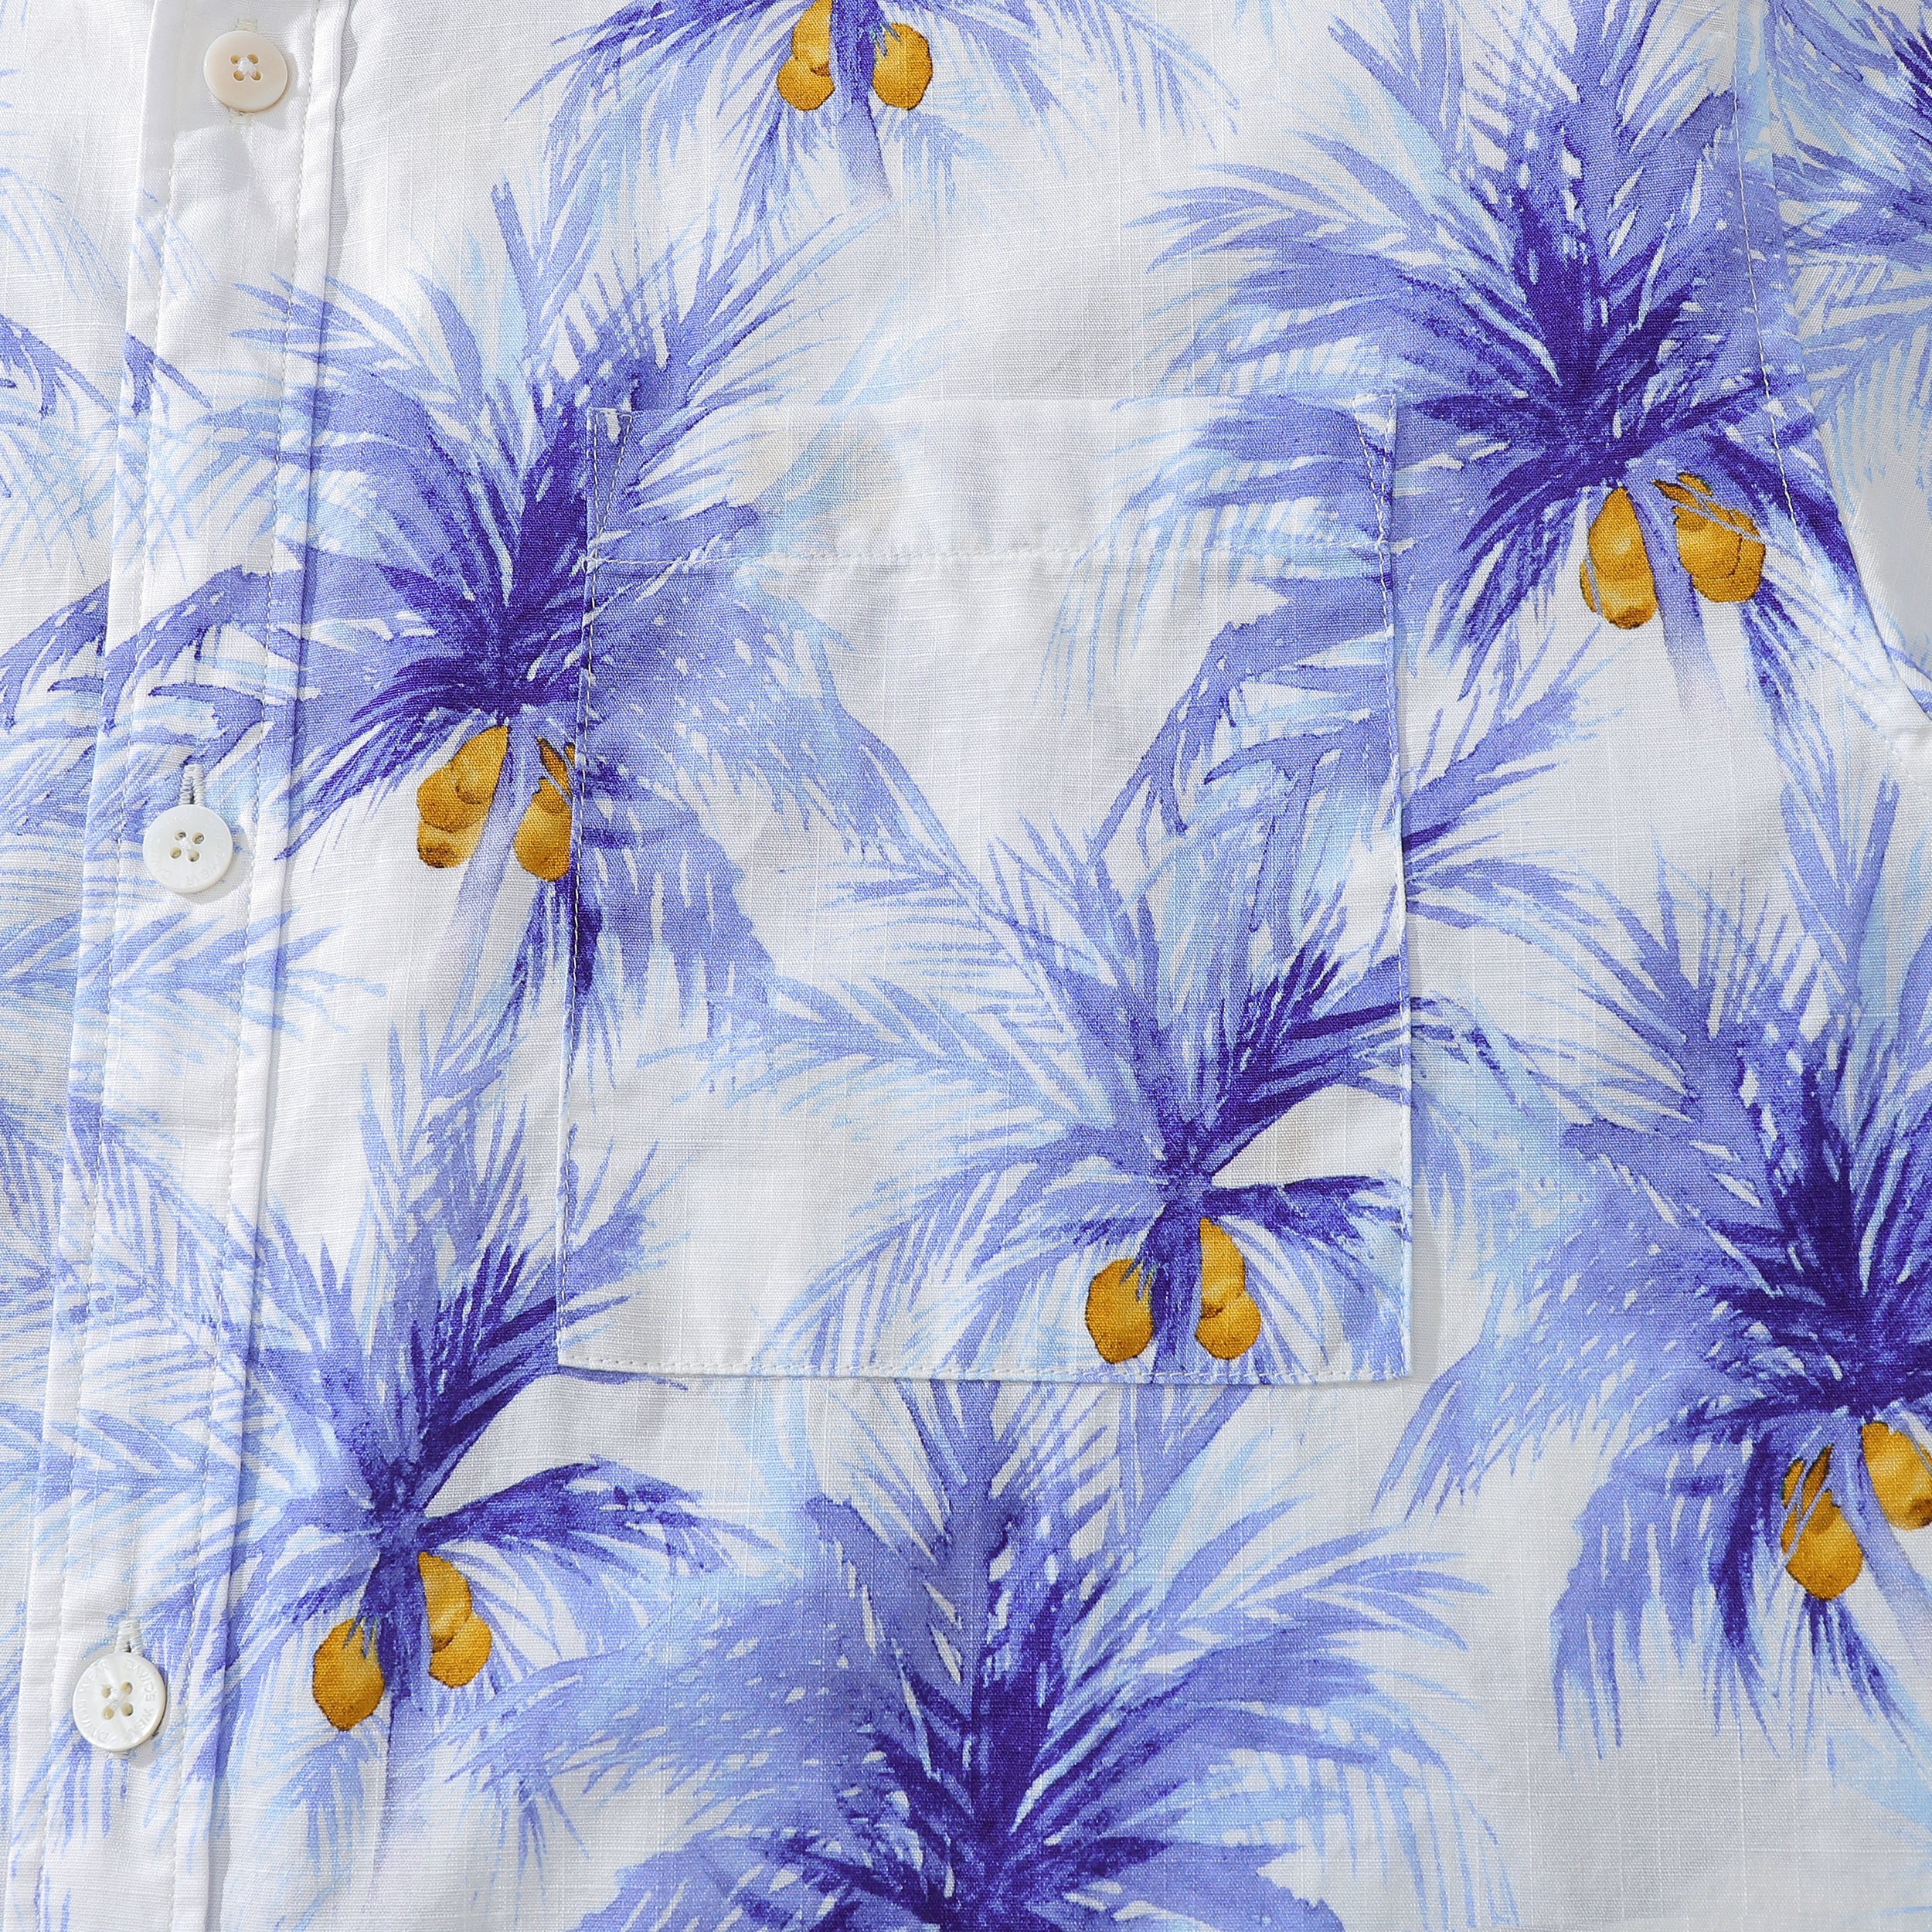 Hawaiian Shirt For Men Tropical Plant Cotton Aloha Shirt Short-sleeve Coconut Tree